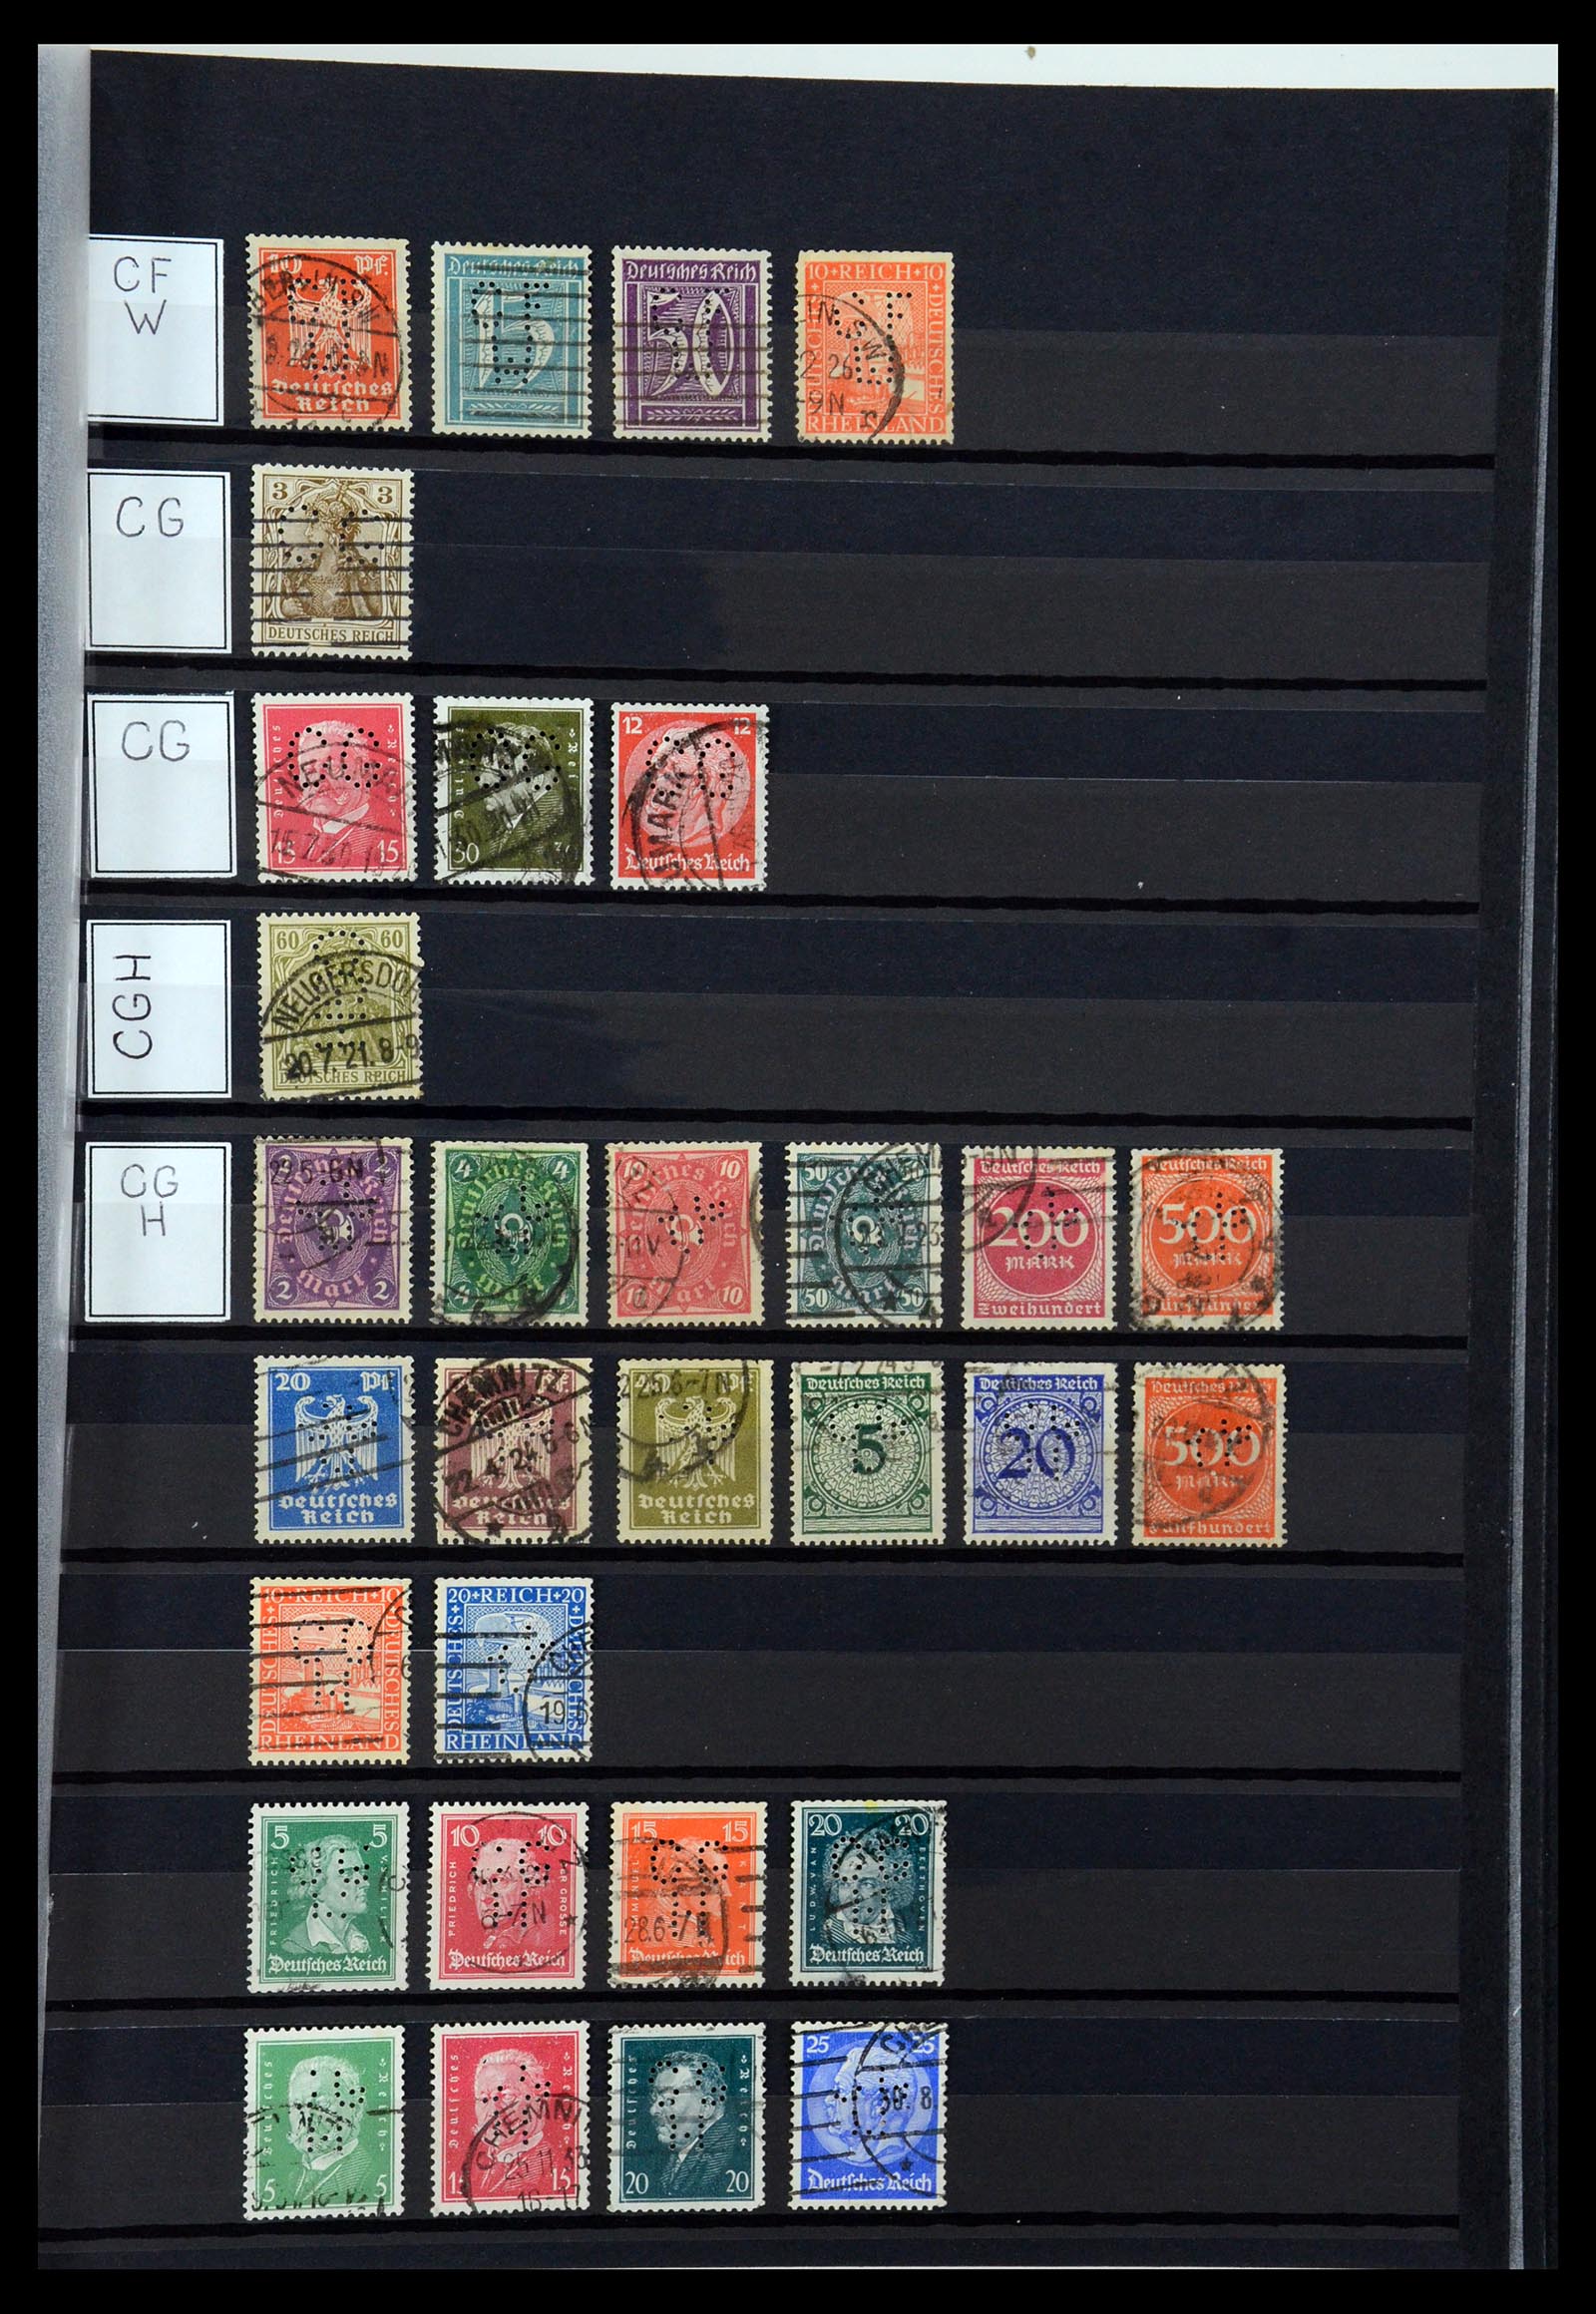 36405 069 - Stamp collection 36405 German Reich perfins 1880-1945.